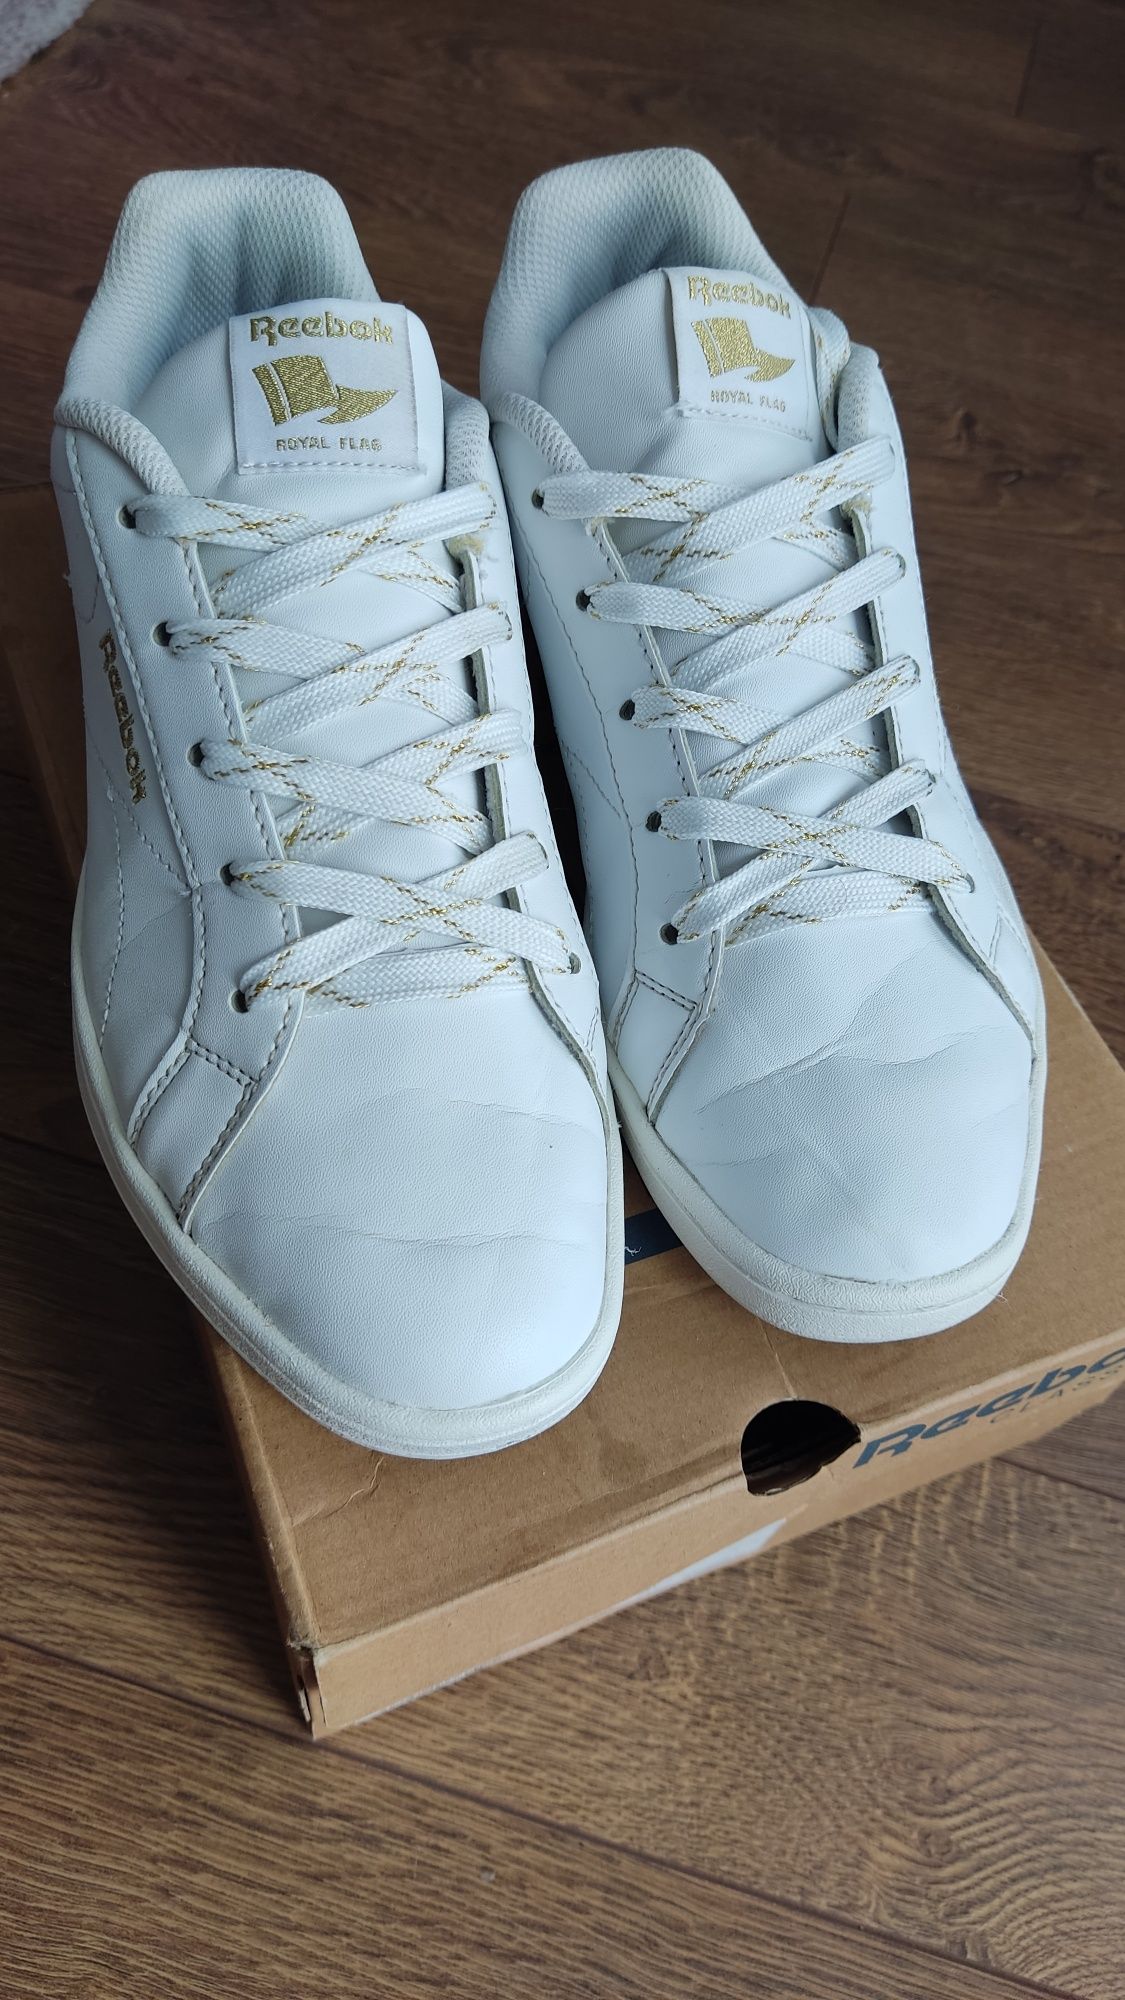 Білі кросівки кеди жіночі Reebok royal complete cln, 39 розмір